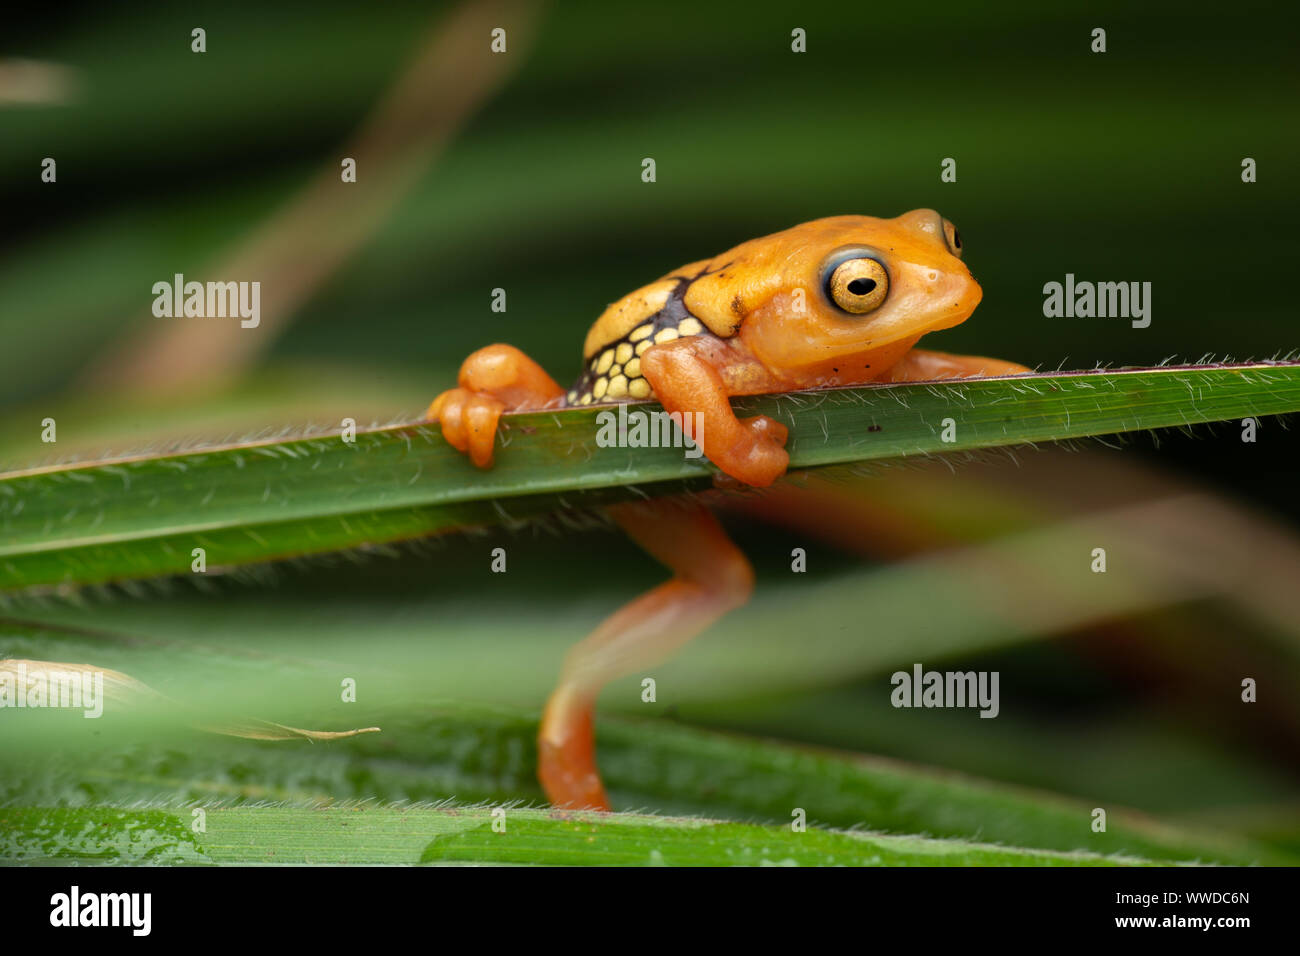 Resplendent bush frog Stock Photo